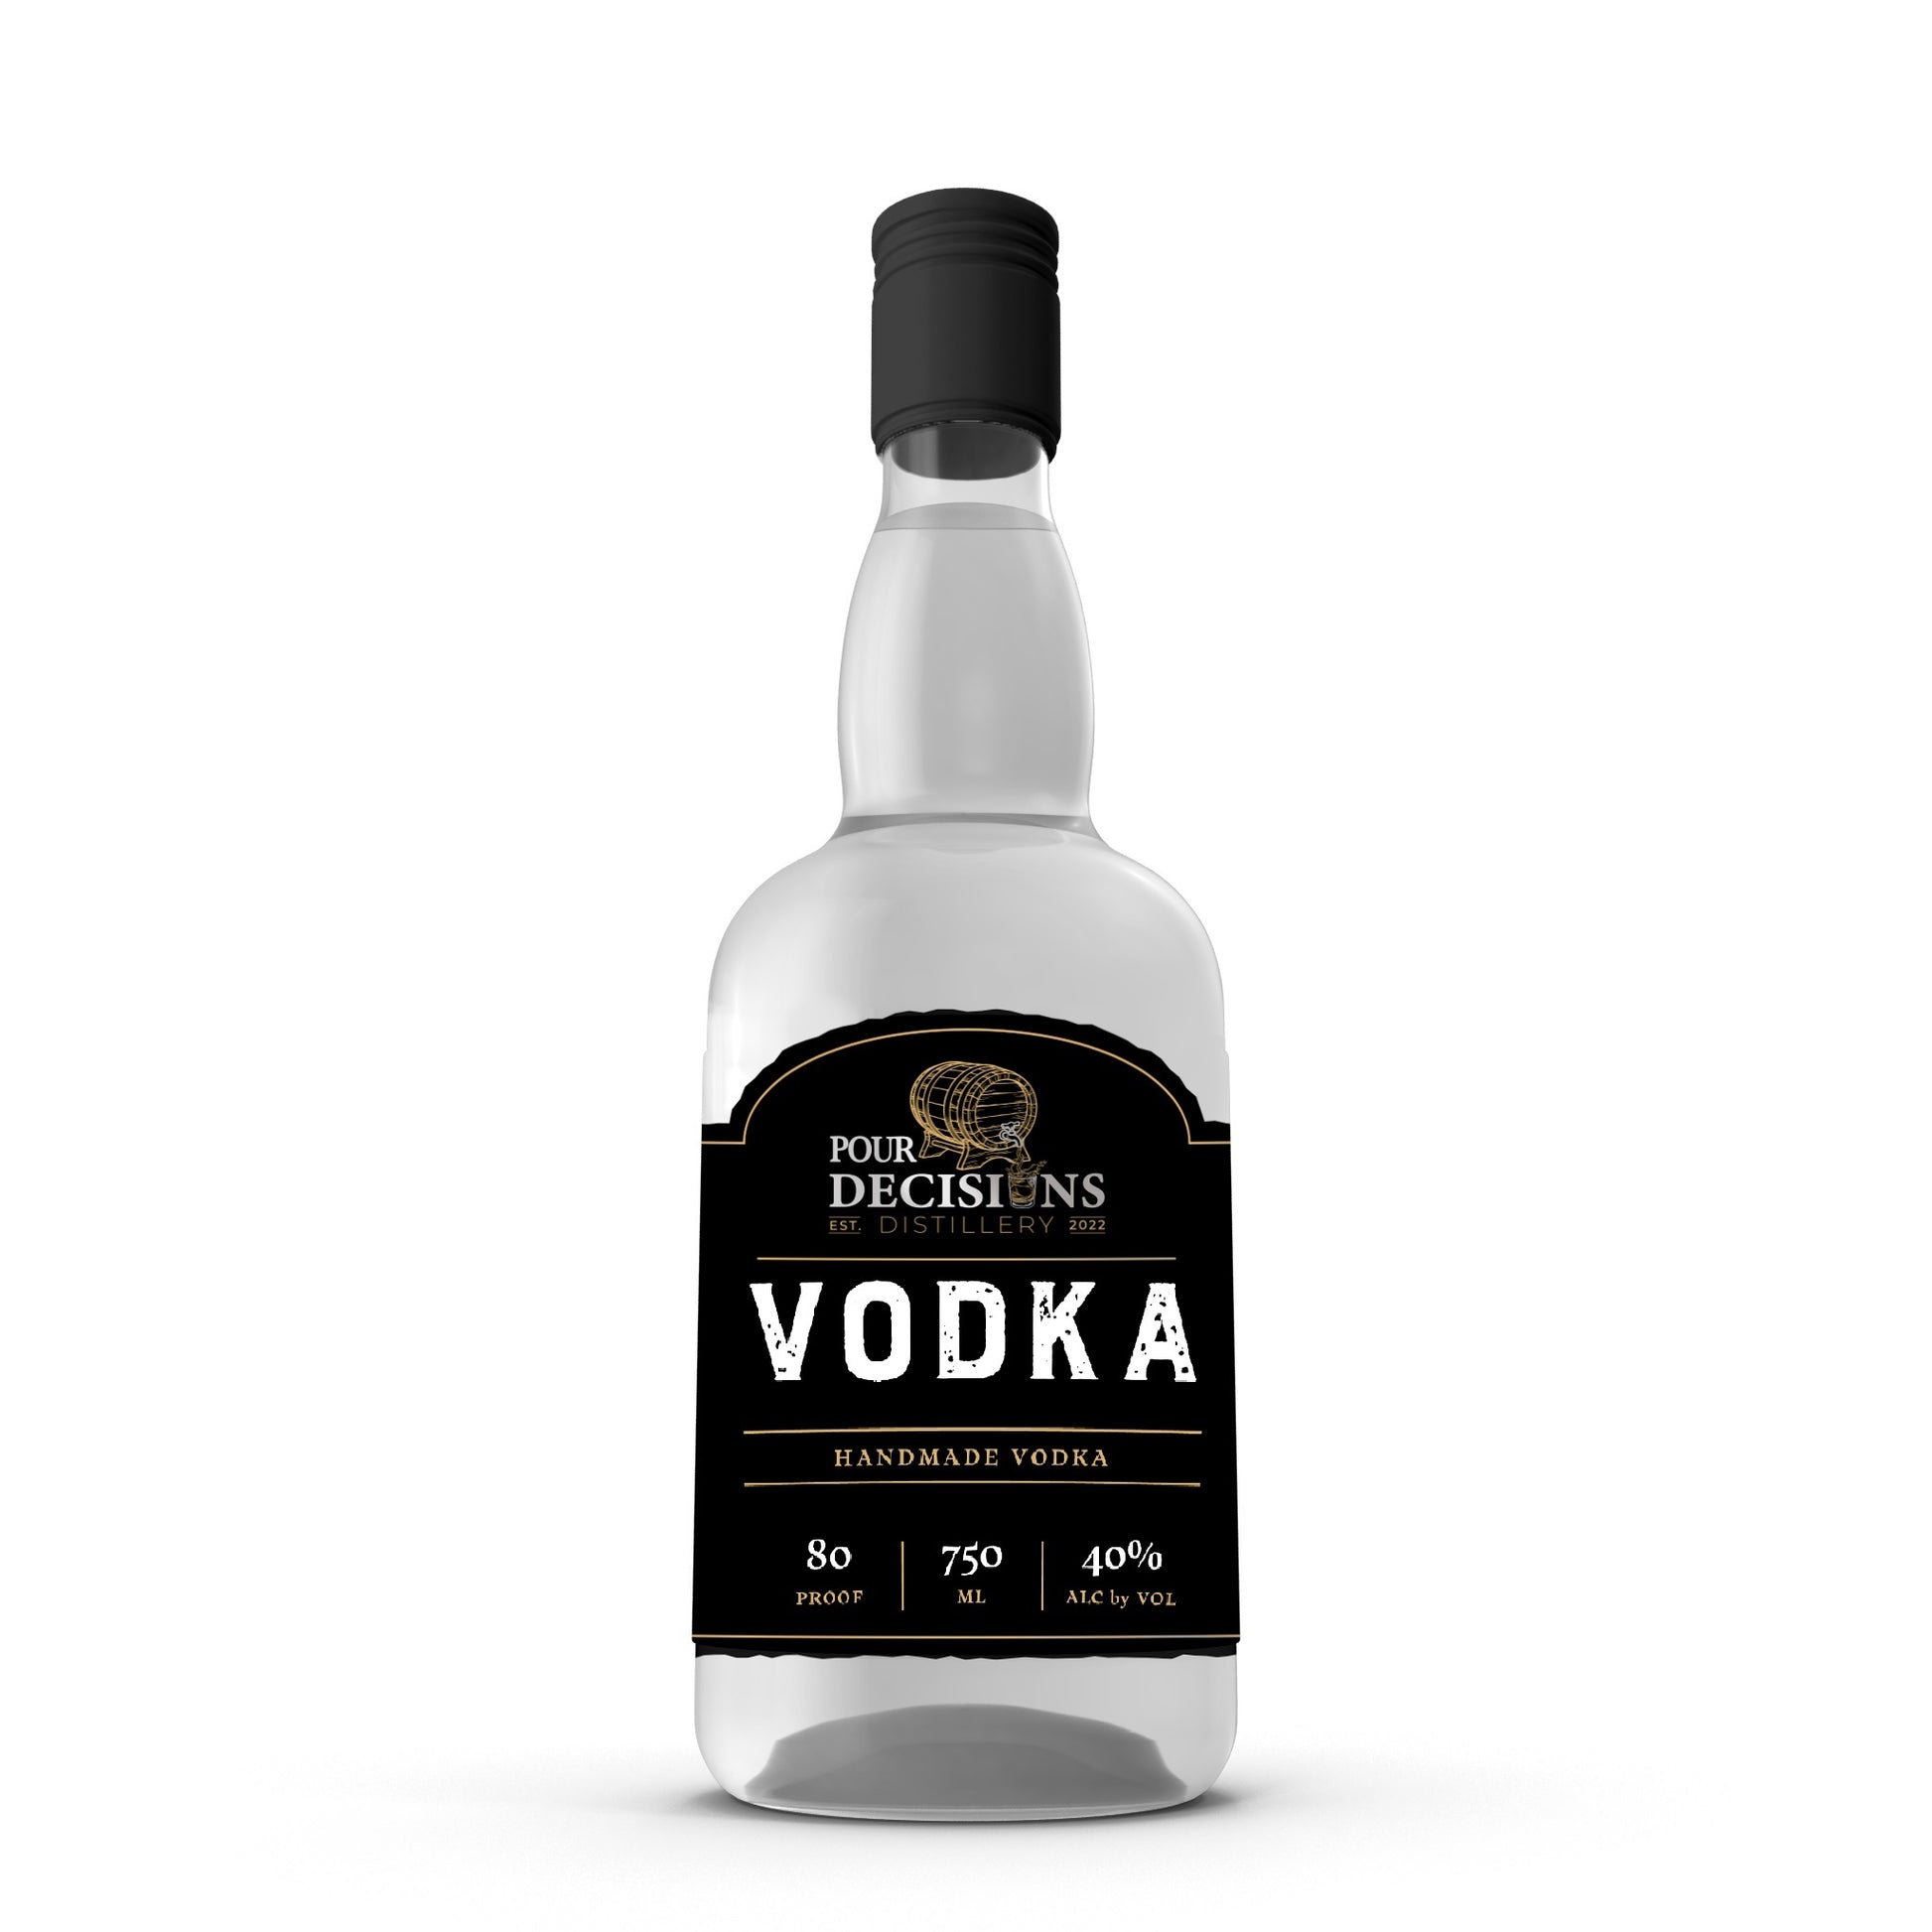 Handmade Vodka 750ml bottle mockup